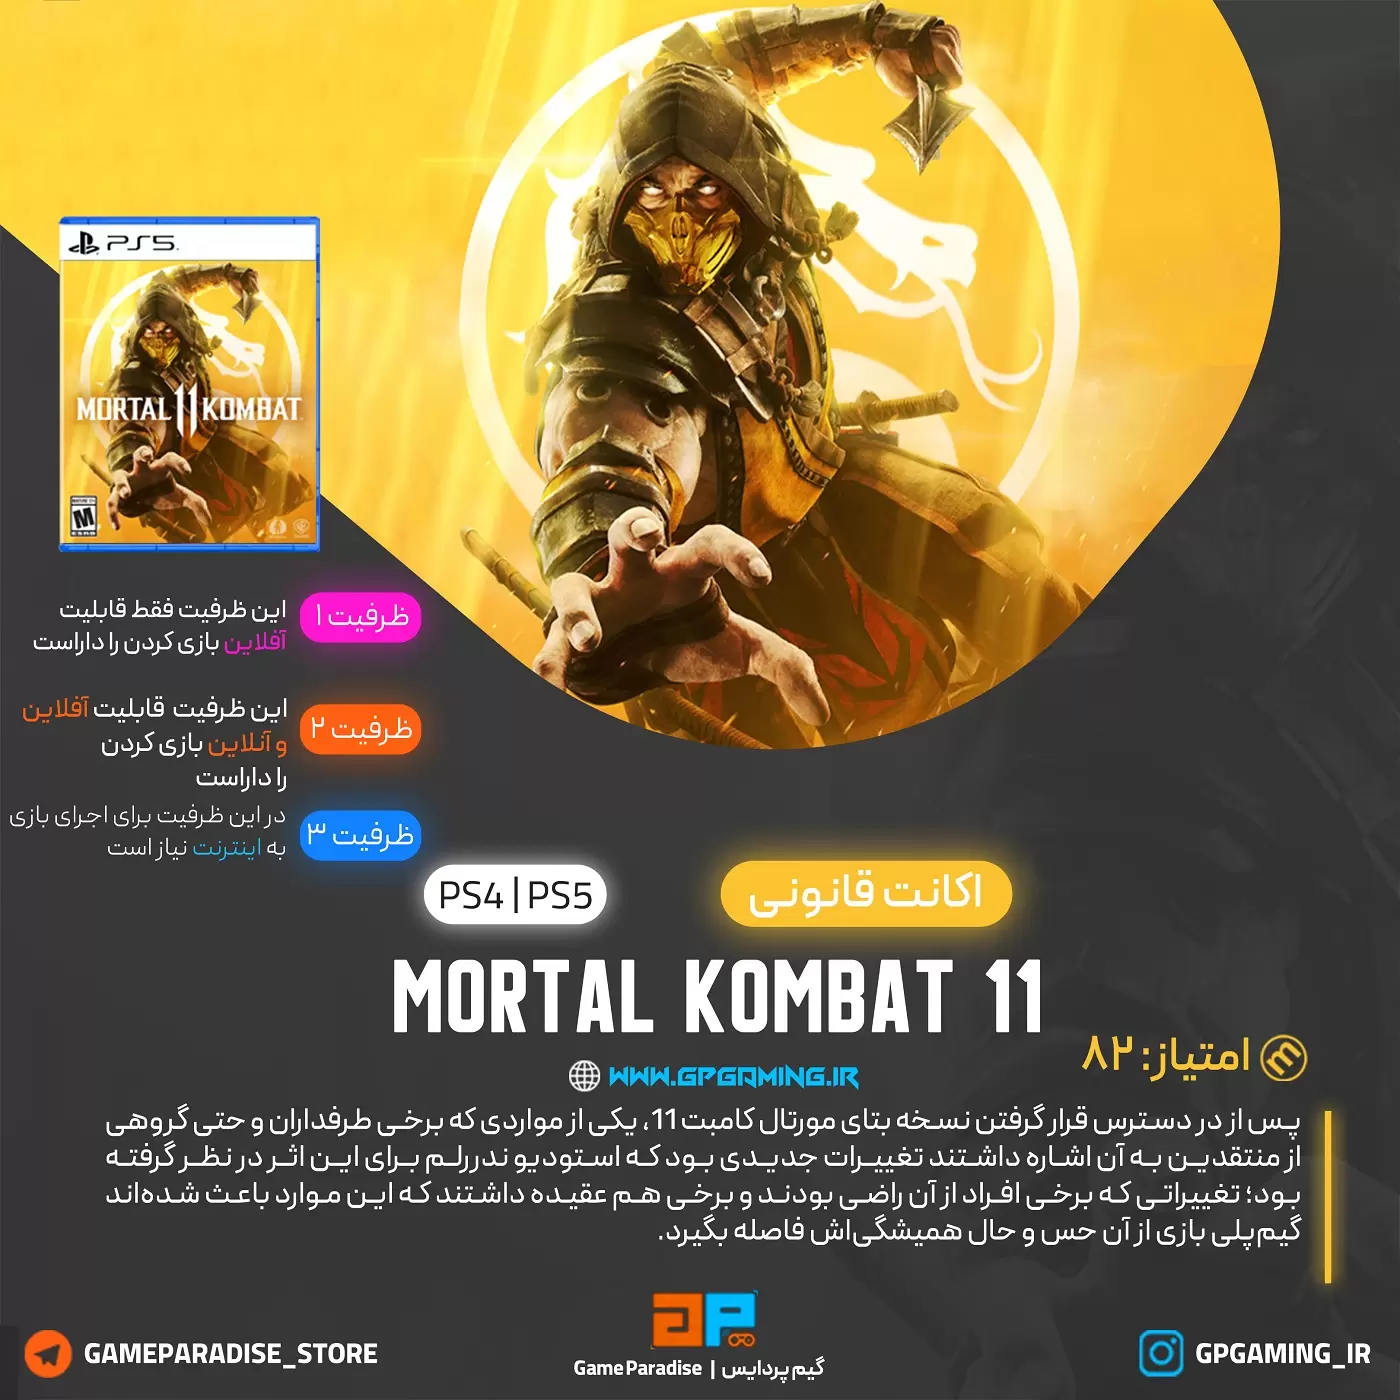  اکانت قانونی Mortal Kombat 11 برای PS4 & PS5 